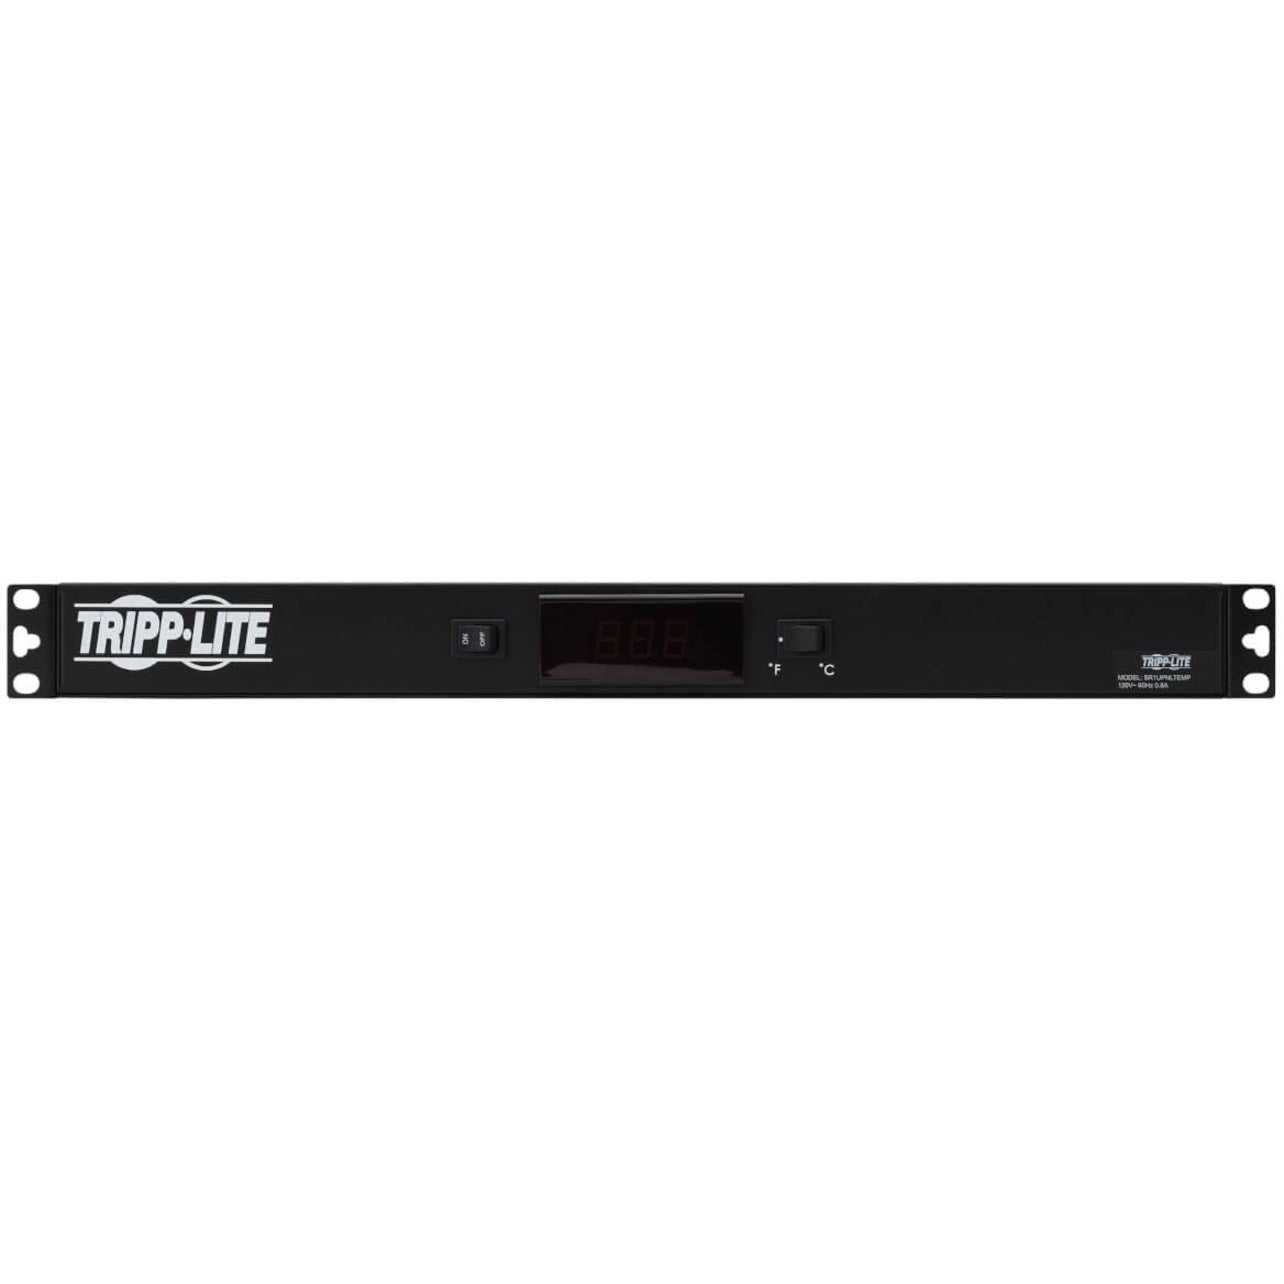 Tripp Lite SR1UPNLTEMP 1U Digital Temperature Sensor Blanking Panel, LCD